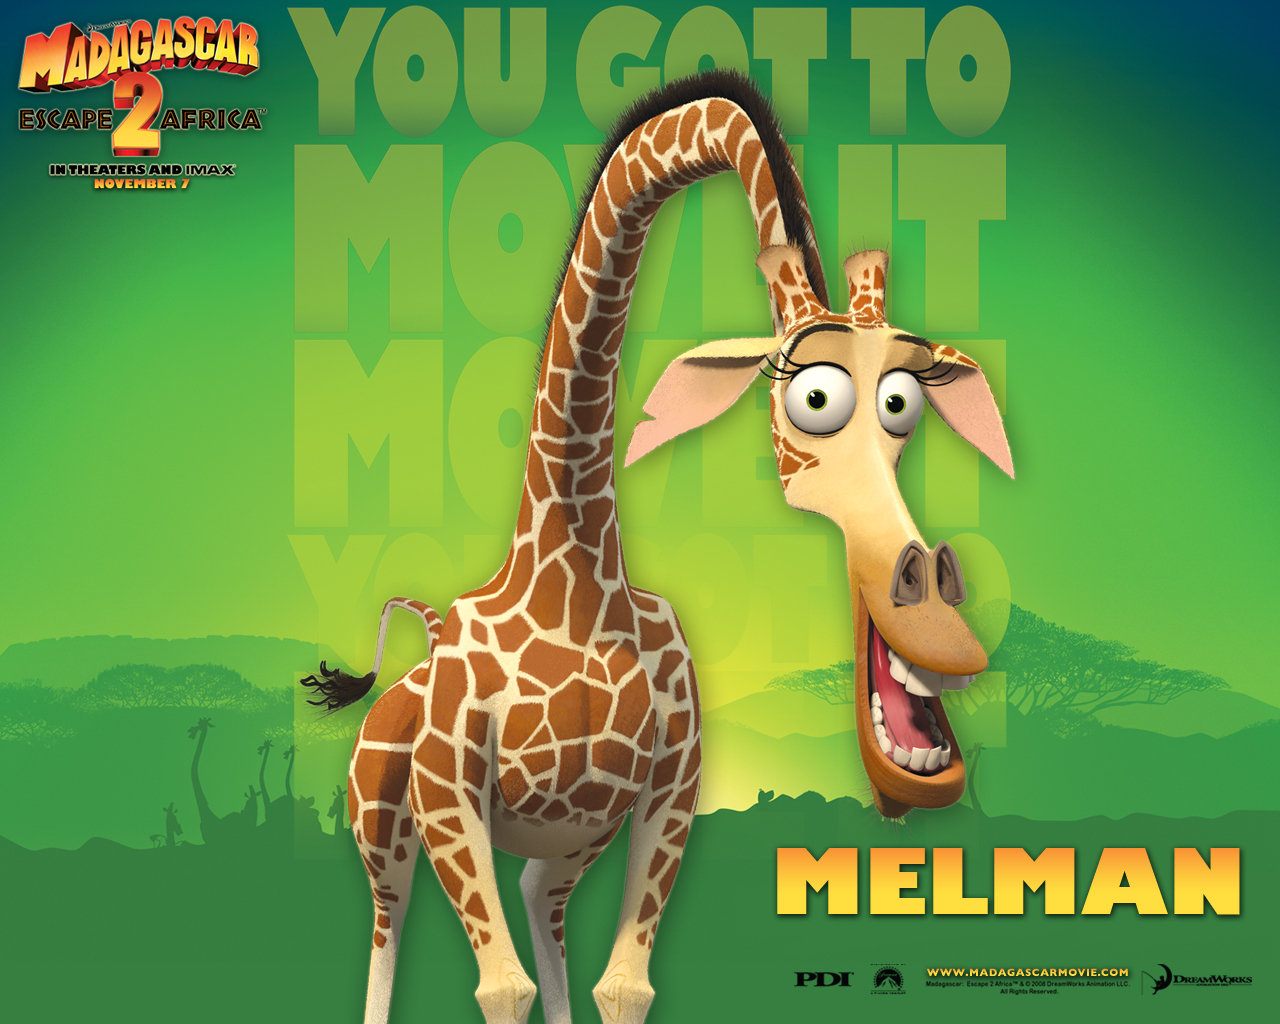 Melman In Madagascar